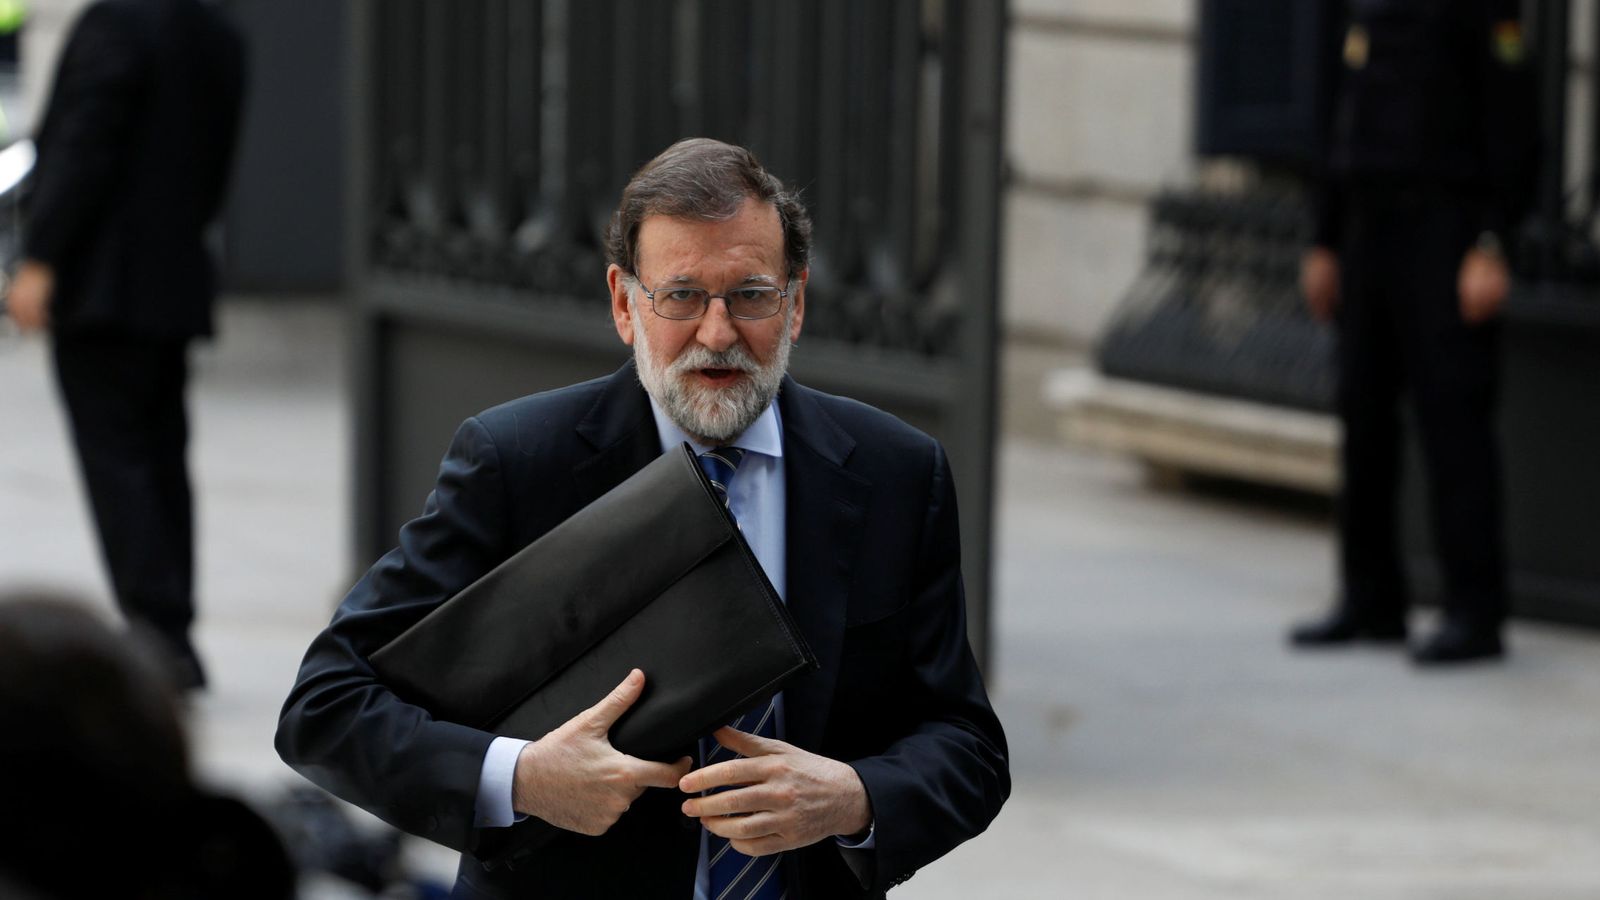 Foto: El presidente del Gobierno, Mariano Rajoy, en el Congreso de los Diputados. (Reuters)